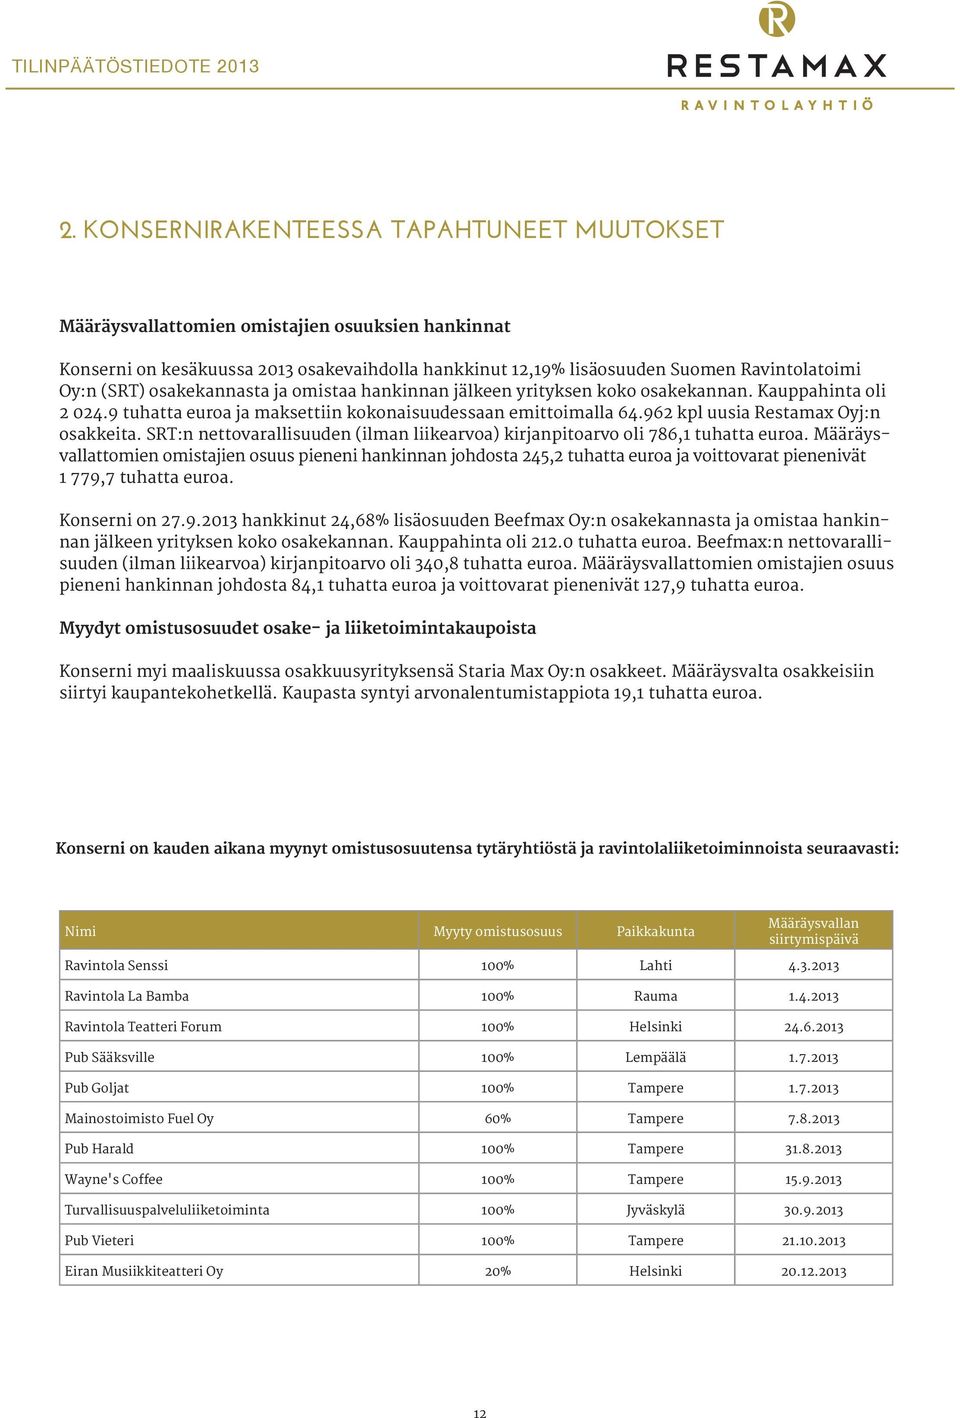 962 kpl uusia Restamax Oyj:n osakkeita. SRT:n nettovarallisuuden (ilman liikearvoa) kirjanpitoarvo oli 786,1 tuhatta euroa.